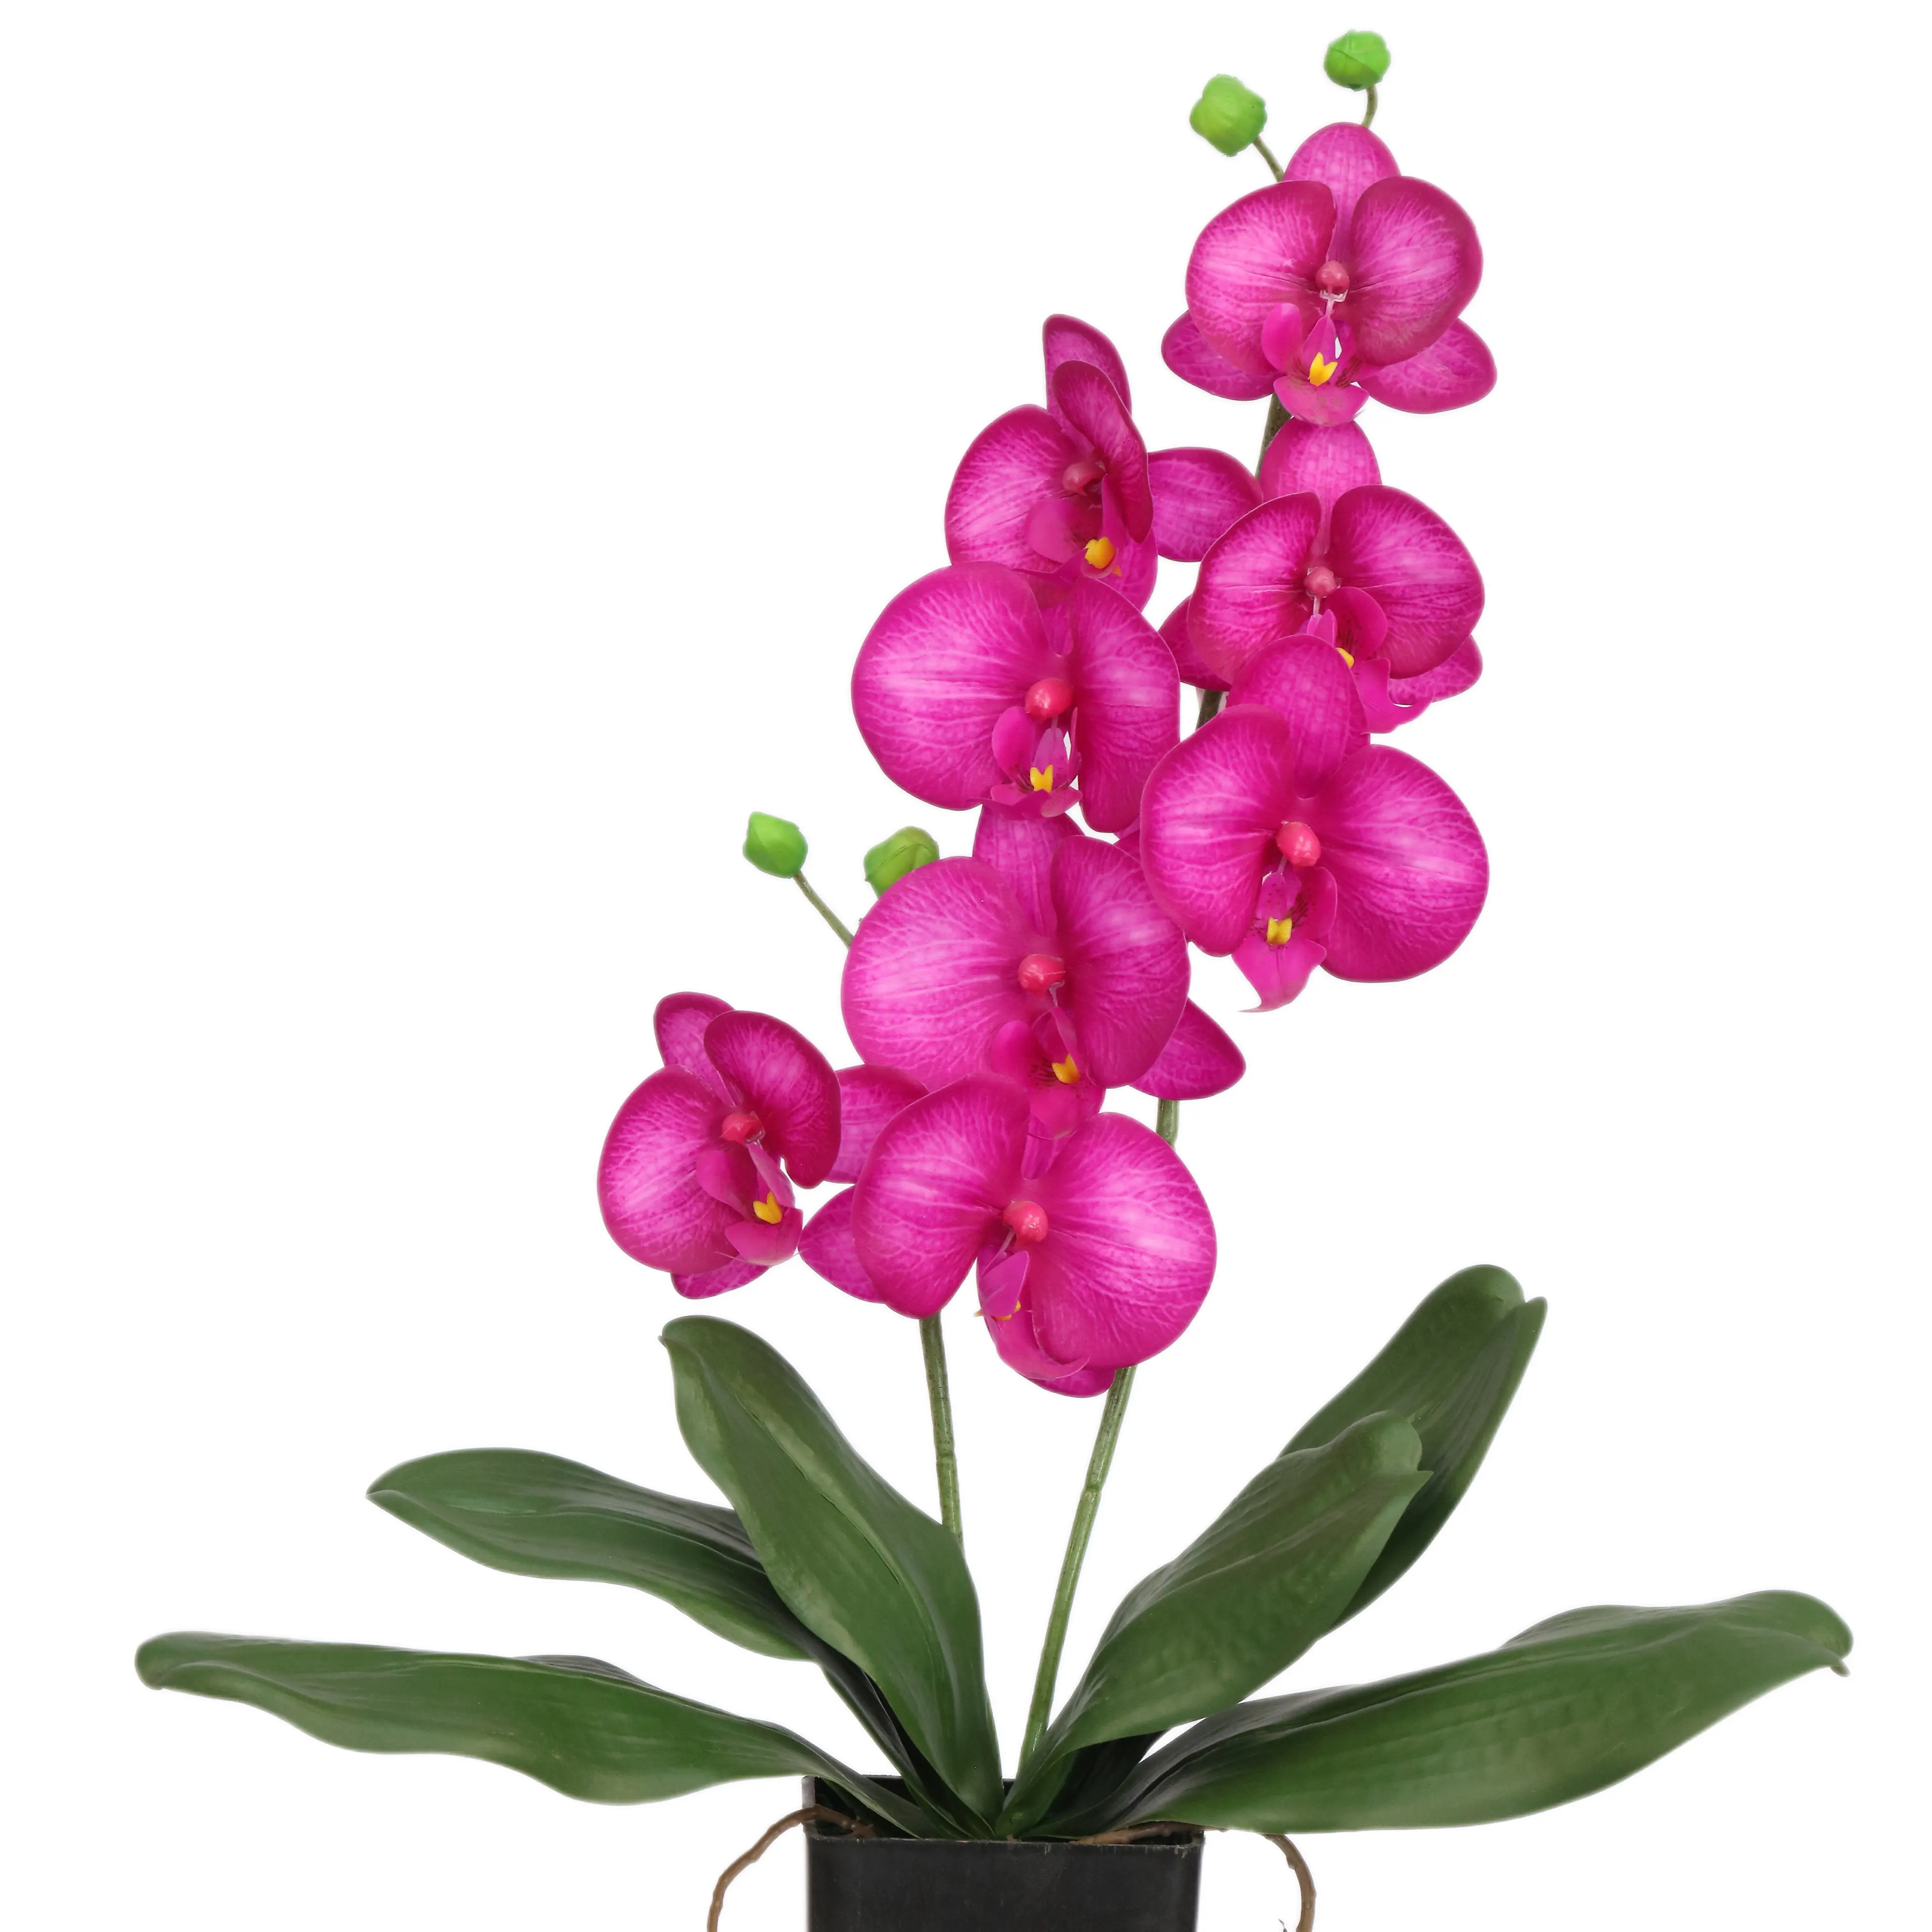 Commercio all'ingrosso di simulazione di seta fiore di orchidea composizioni artificiale phalaenopsis orchidee boccette